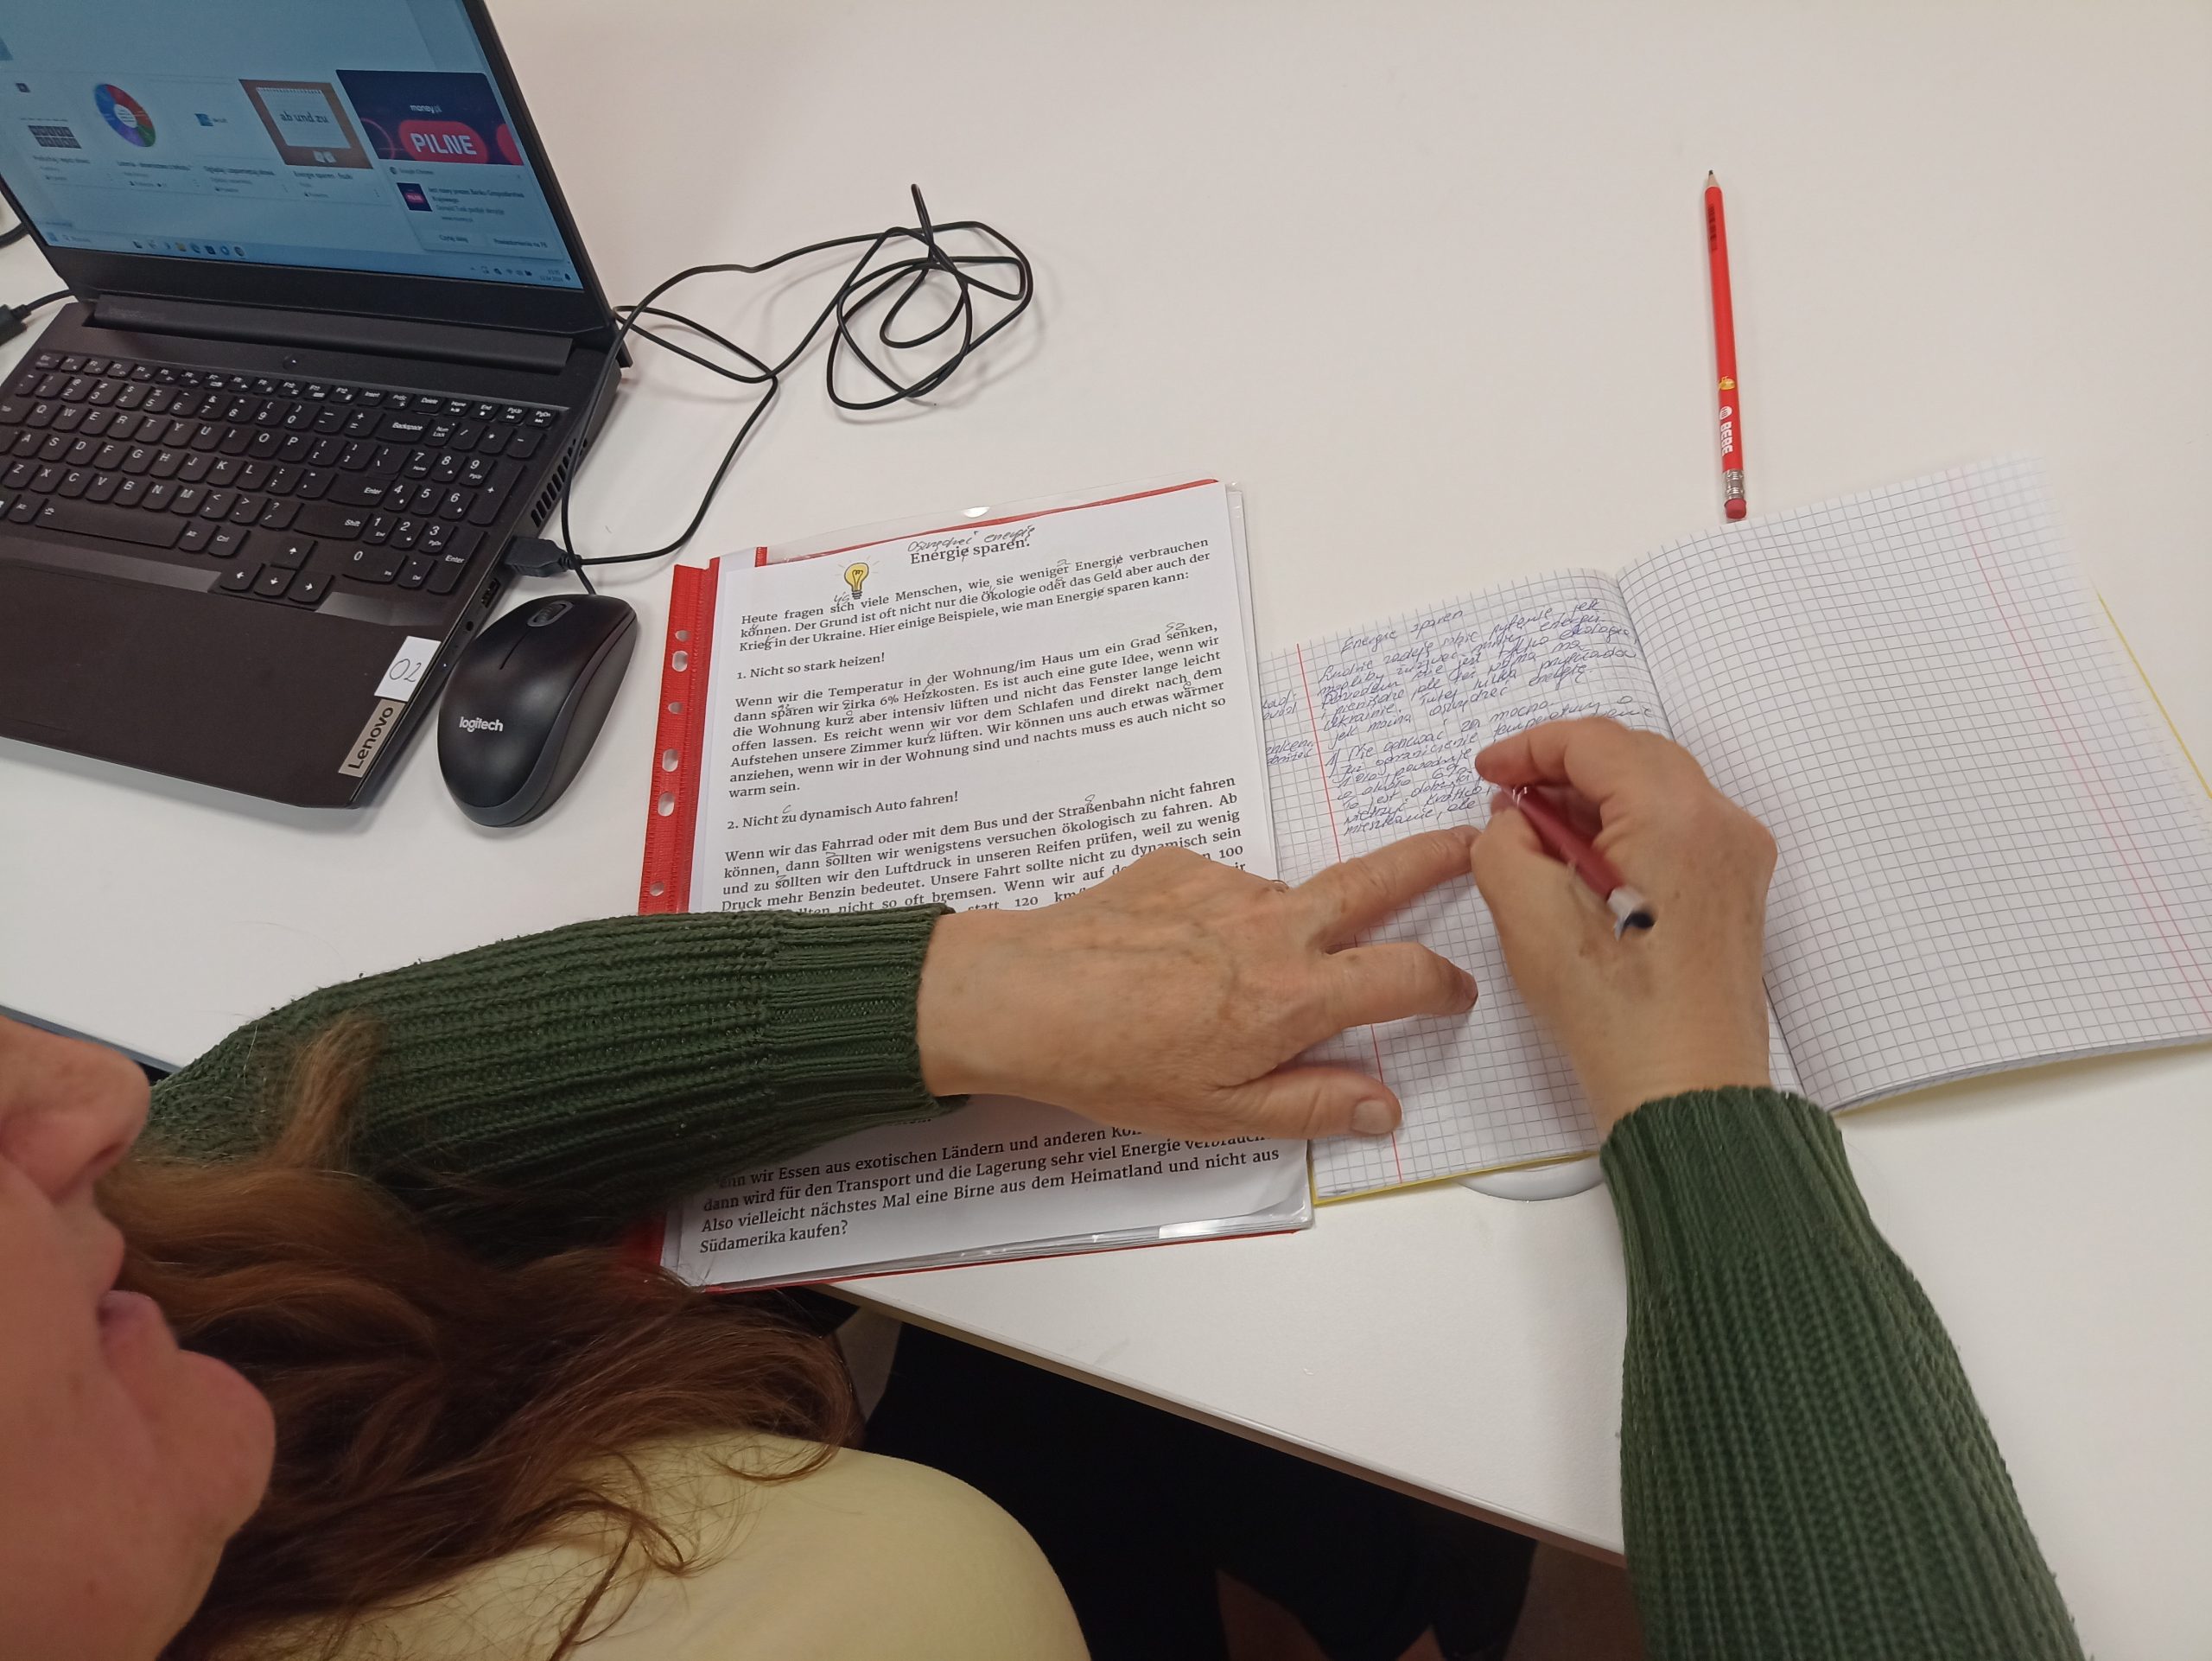 Na zdjęciu widoczne dłonie osoby dorosłej, która zapisuje słowa z niemieckiego tekstu w zeszycie.